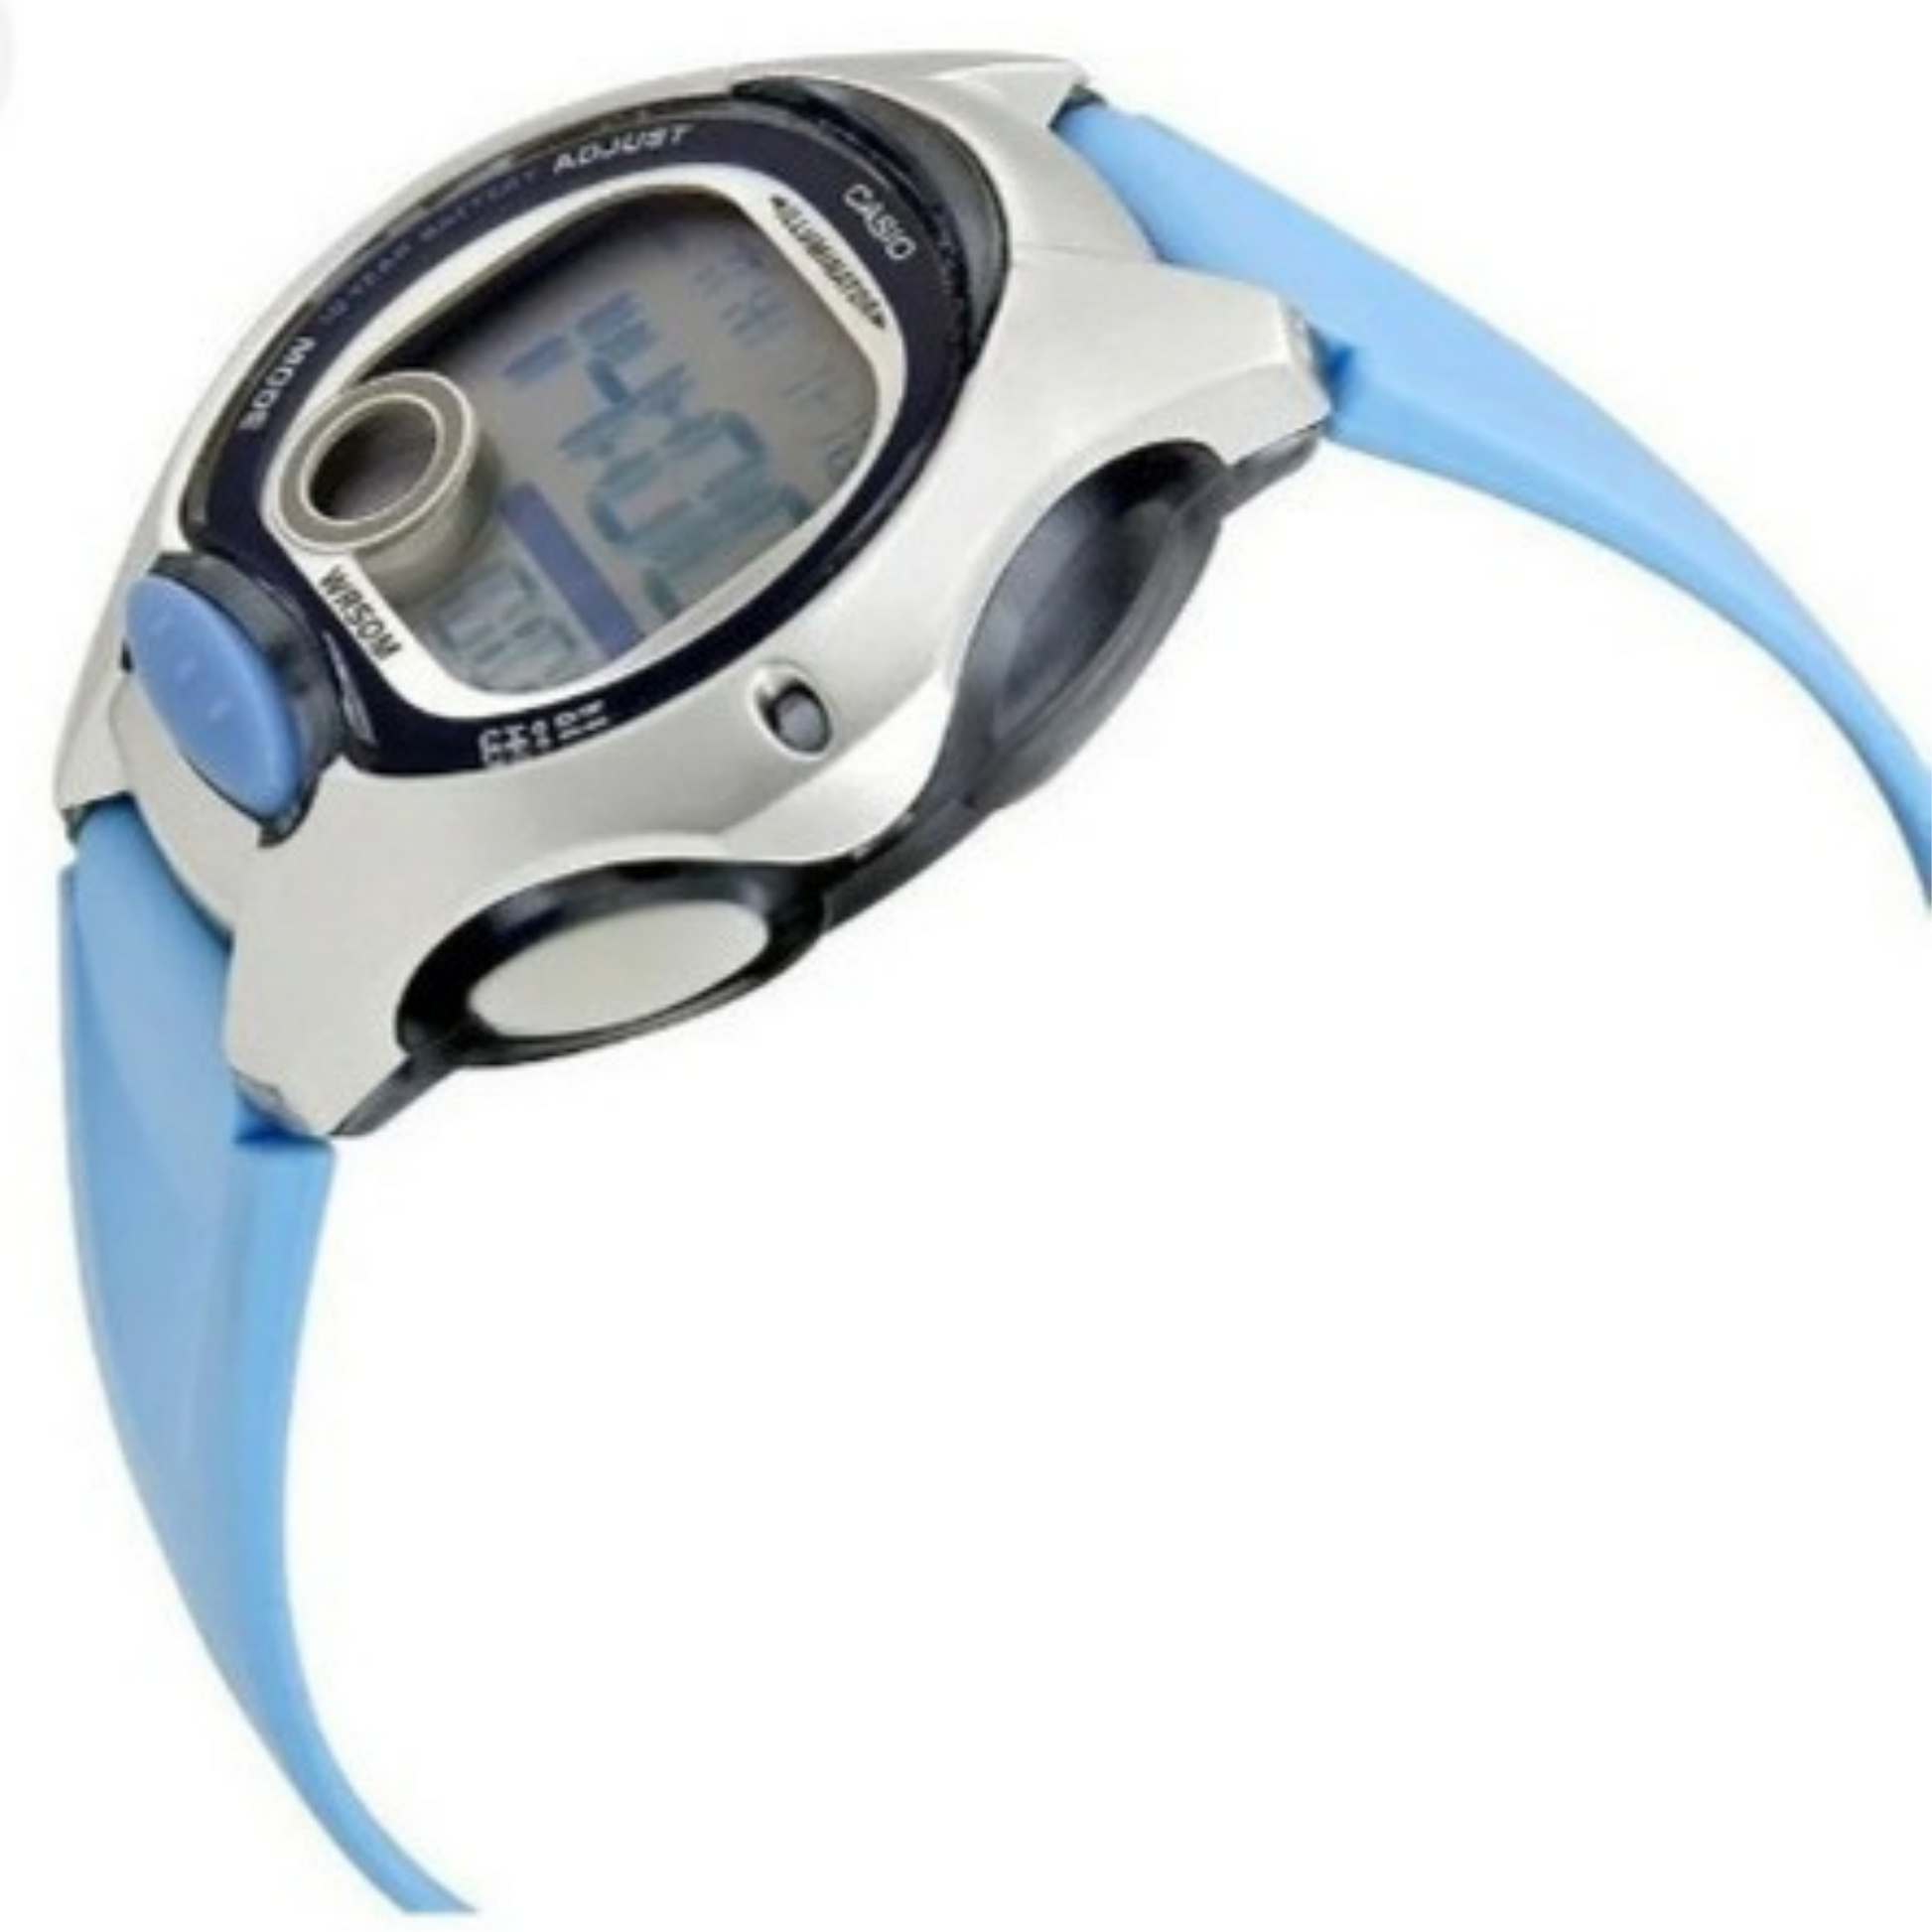 Reloj Casio Digital Niño Azul Lw-200-2bvdf